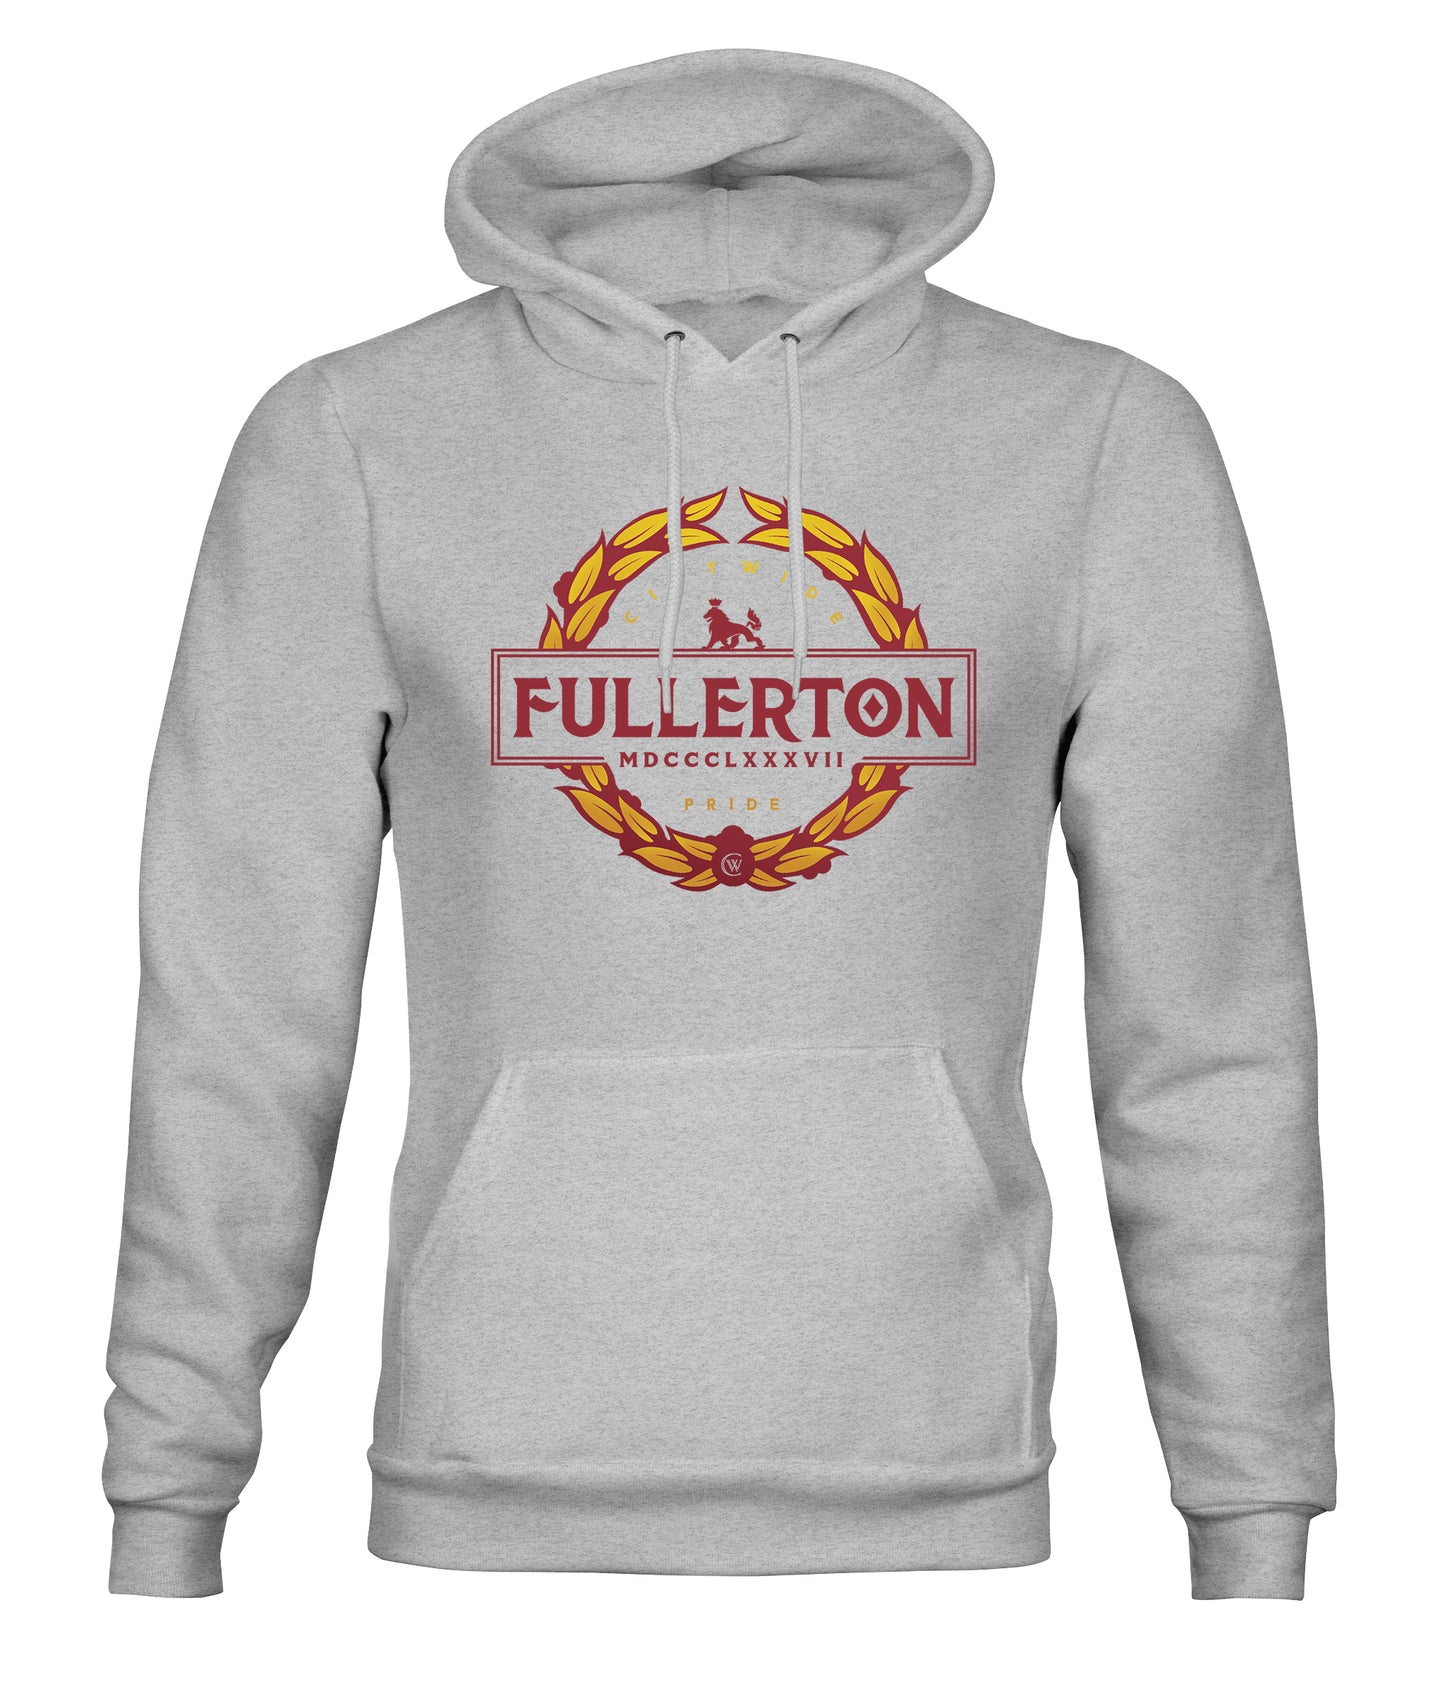 Fullerton The Pride Hoody